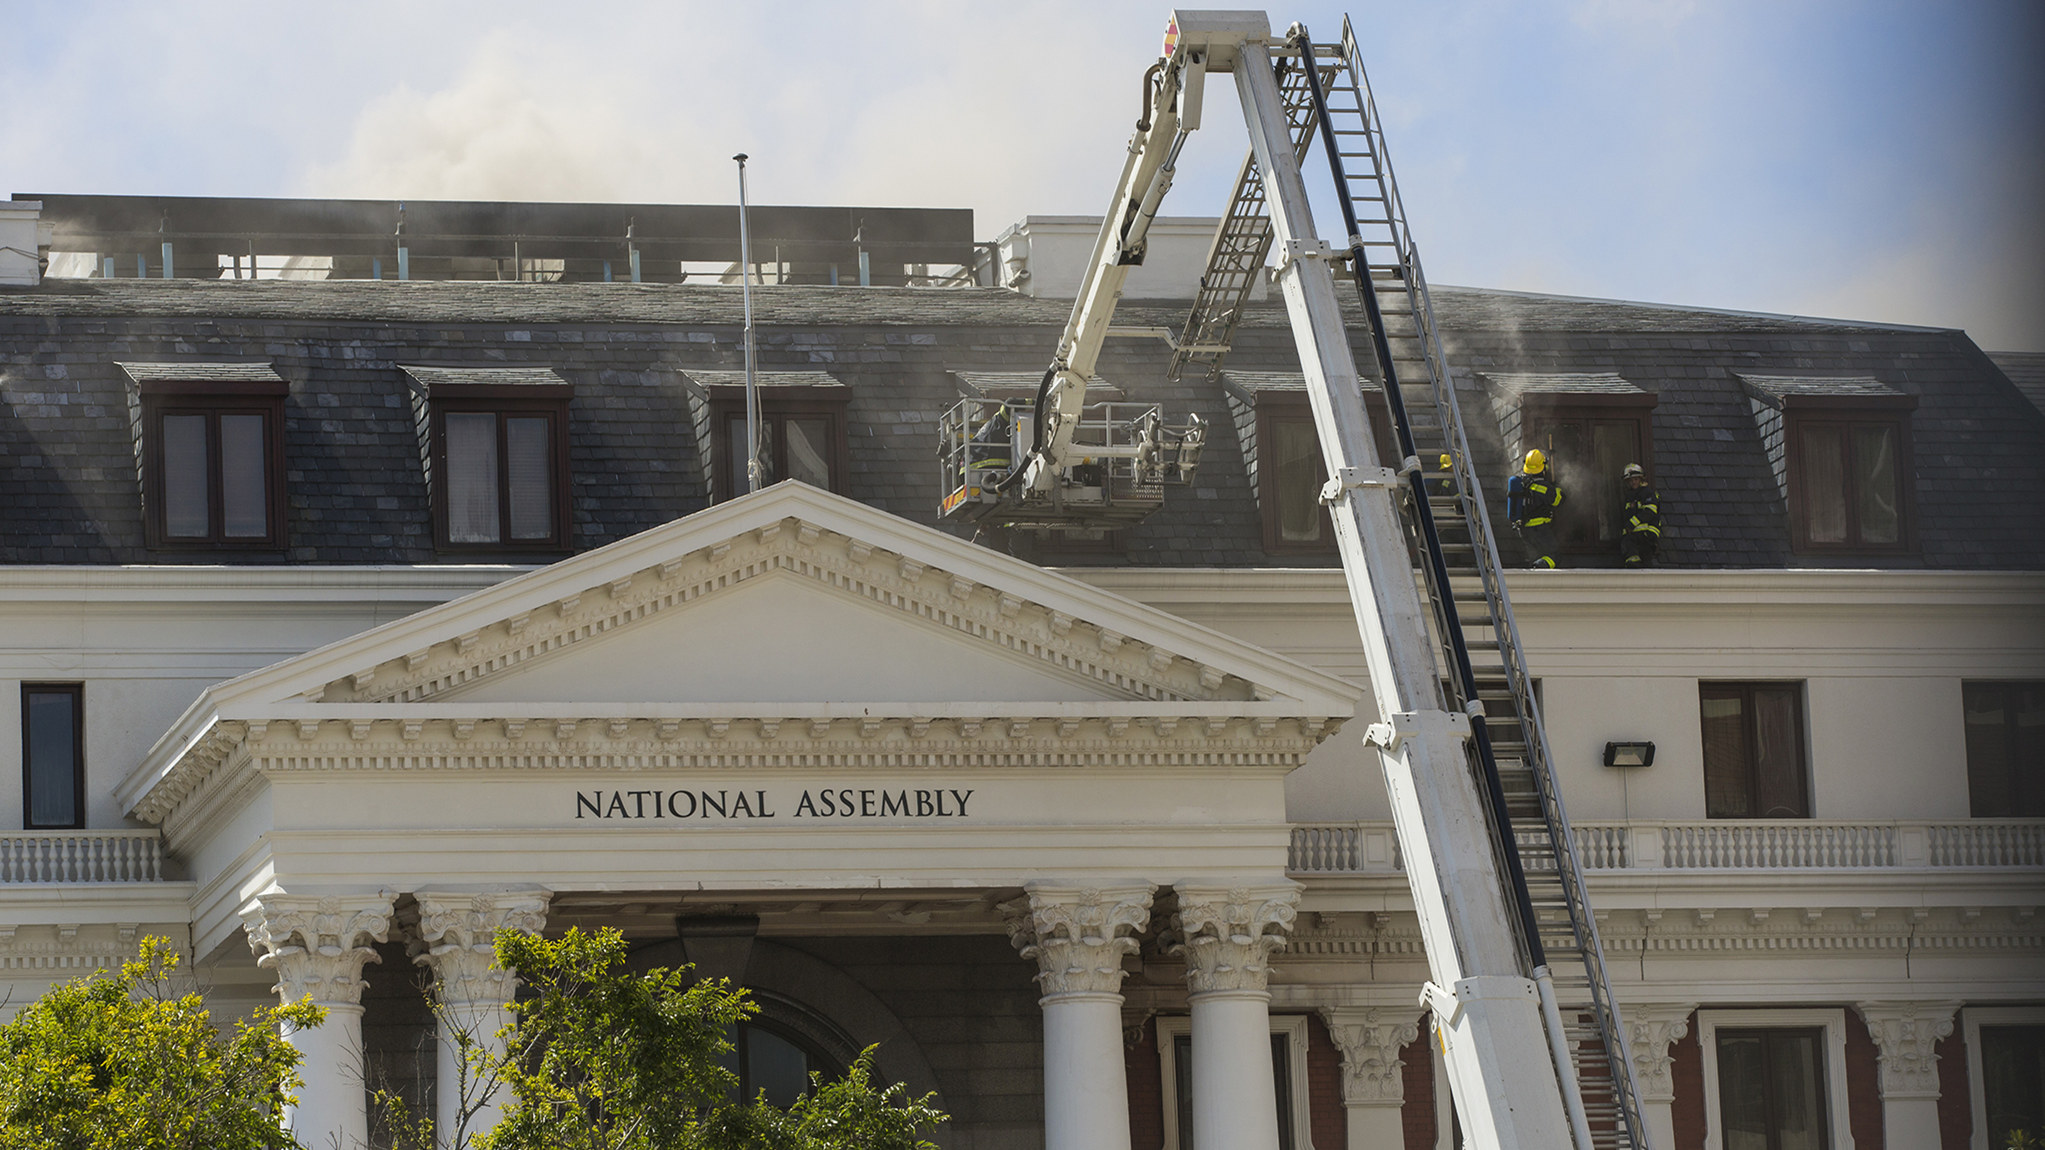 【追蹤報道】南非議會建築在火災中受損嚴重